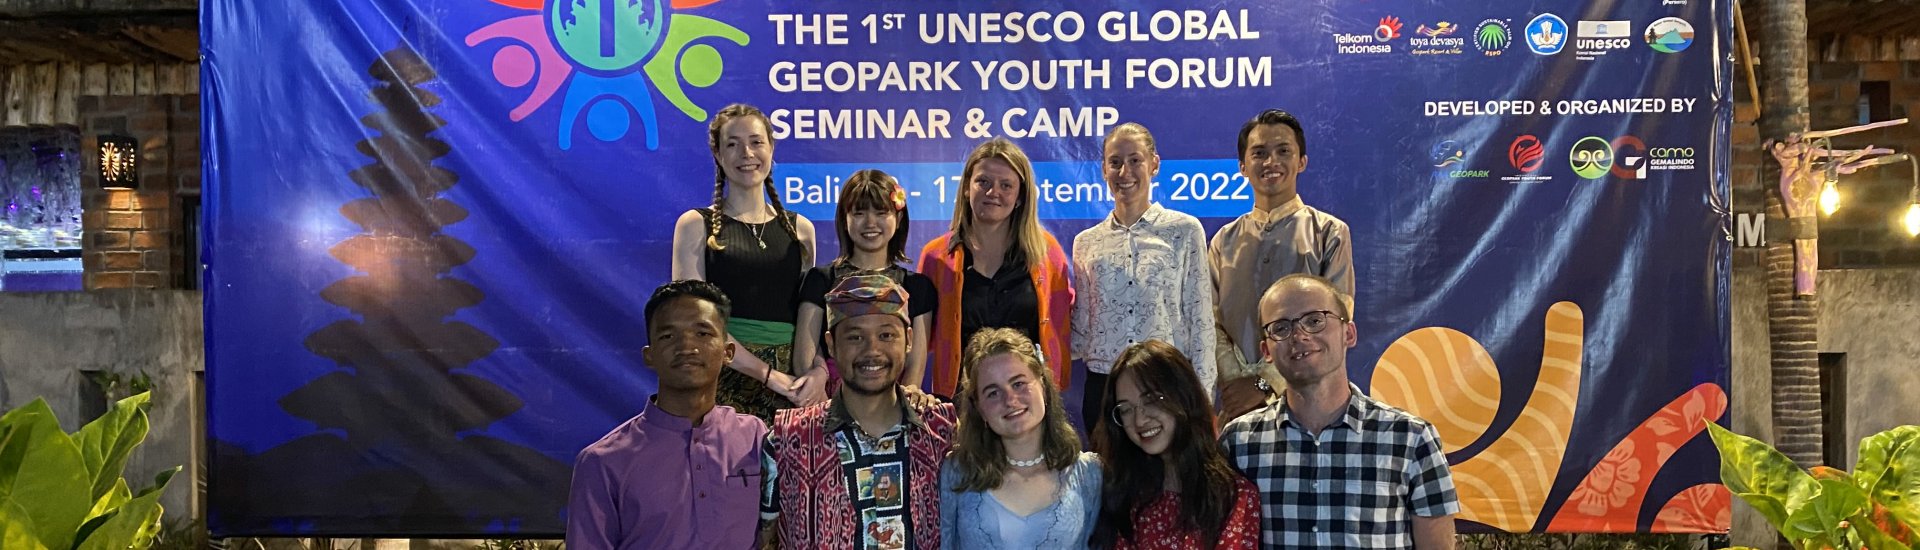 Deelnemende jongeren aan het 1st Unesco Global Geopark Youth Forum Seminar & Camp.